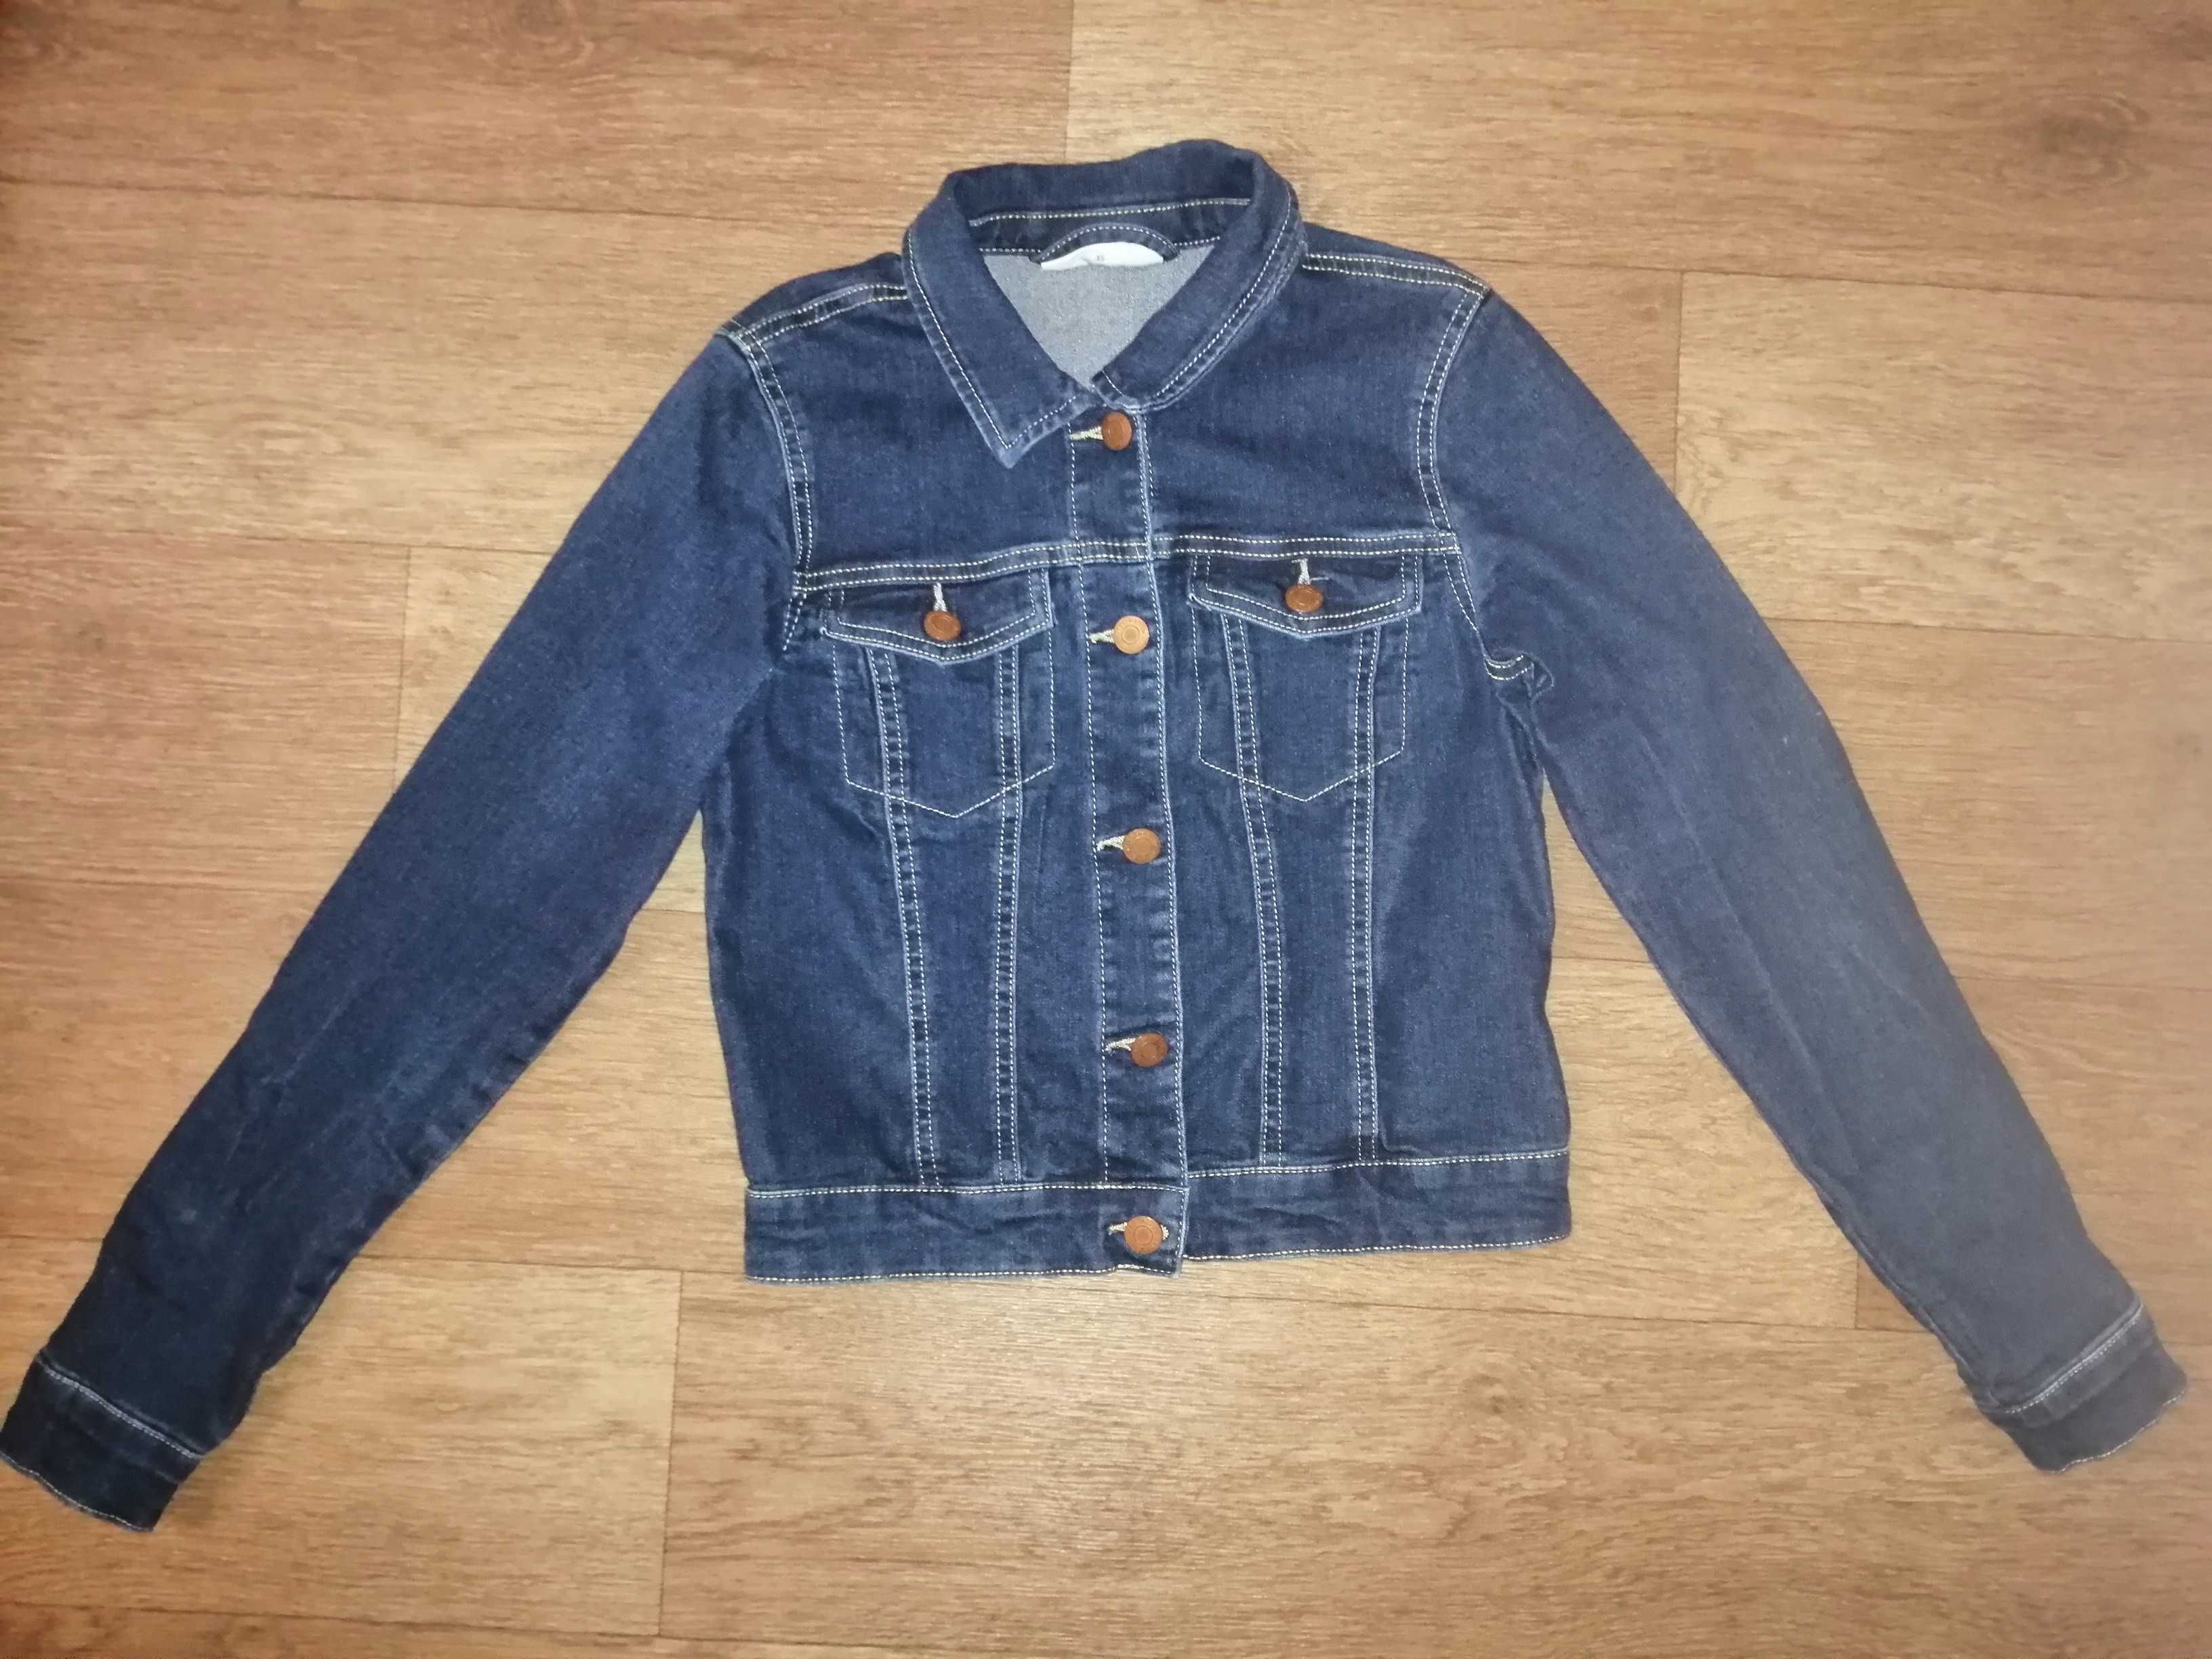 размер ХS, S, джинсовая куртка пиджак